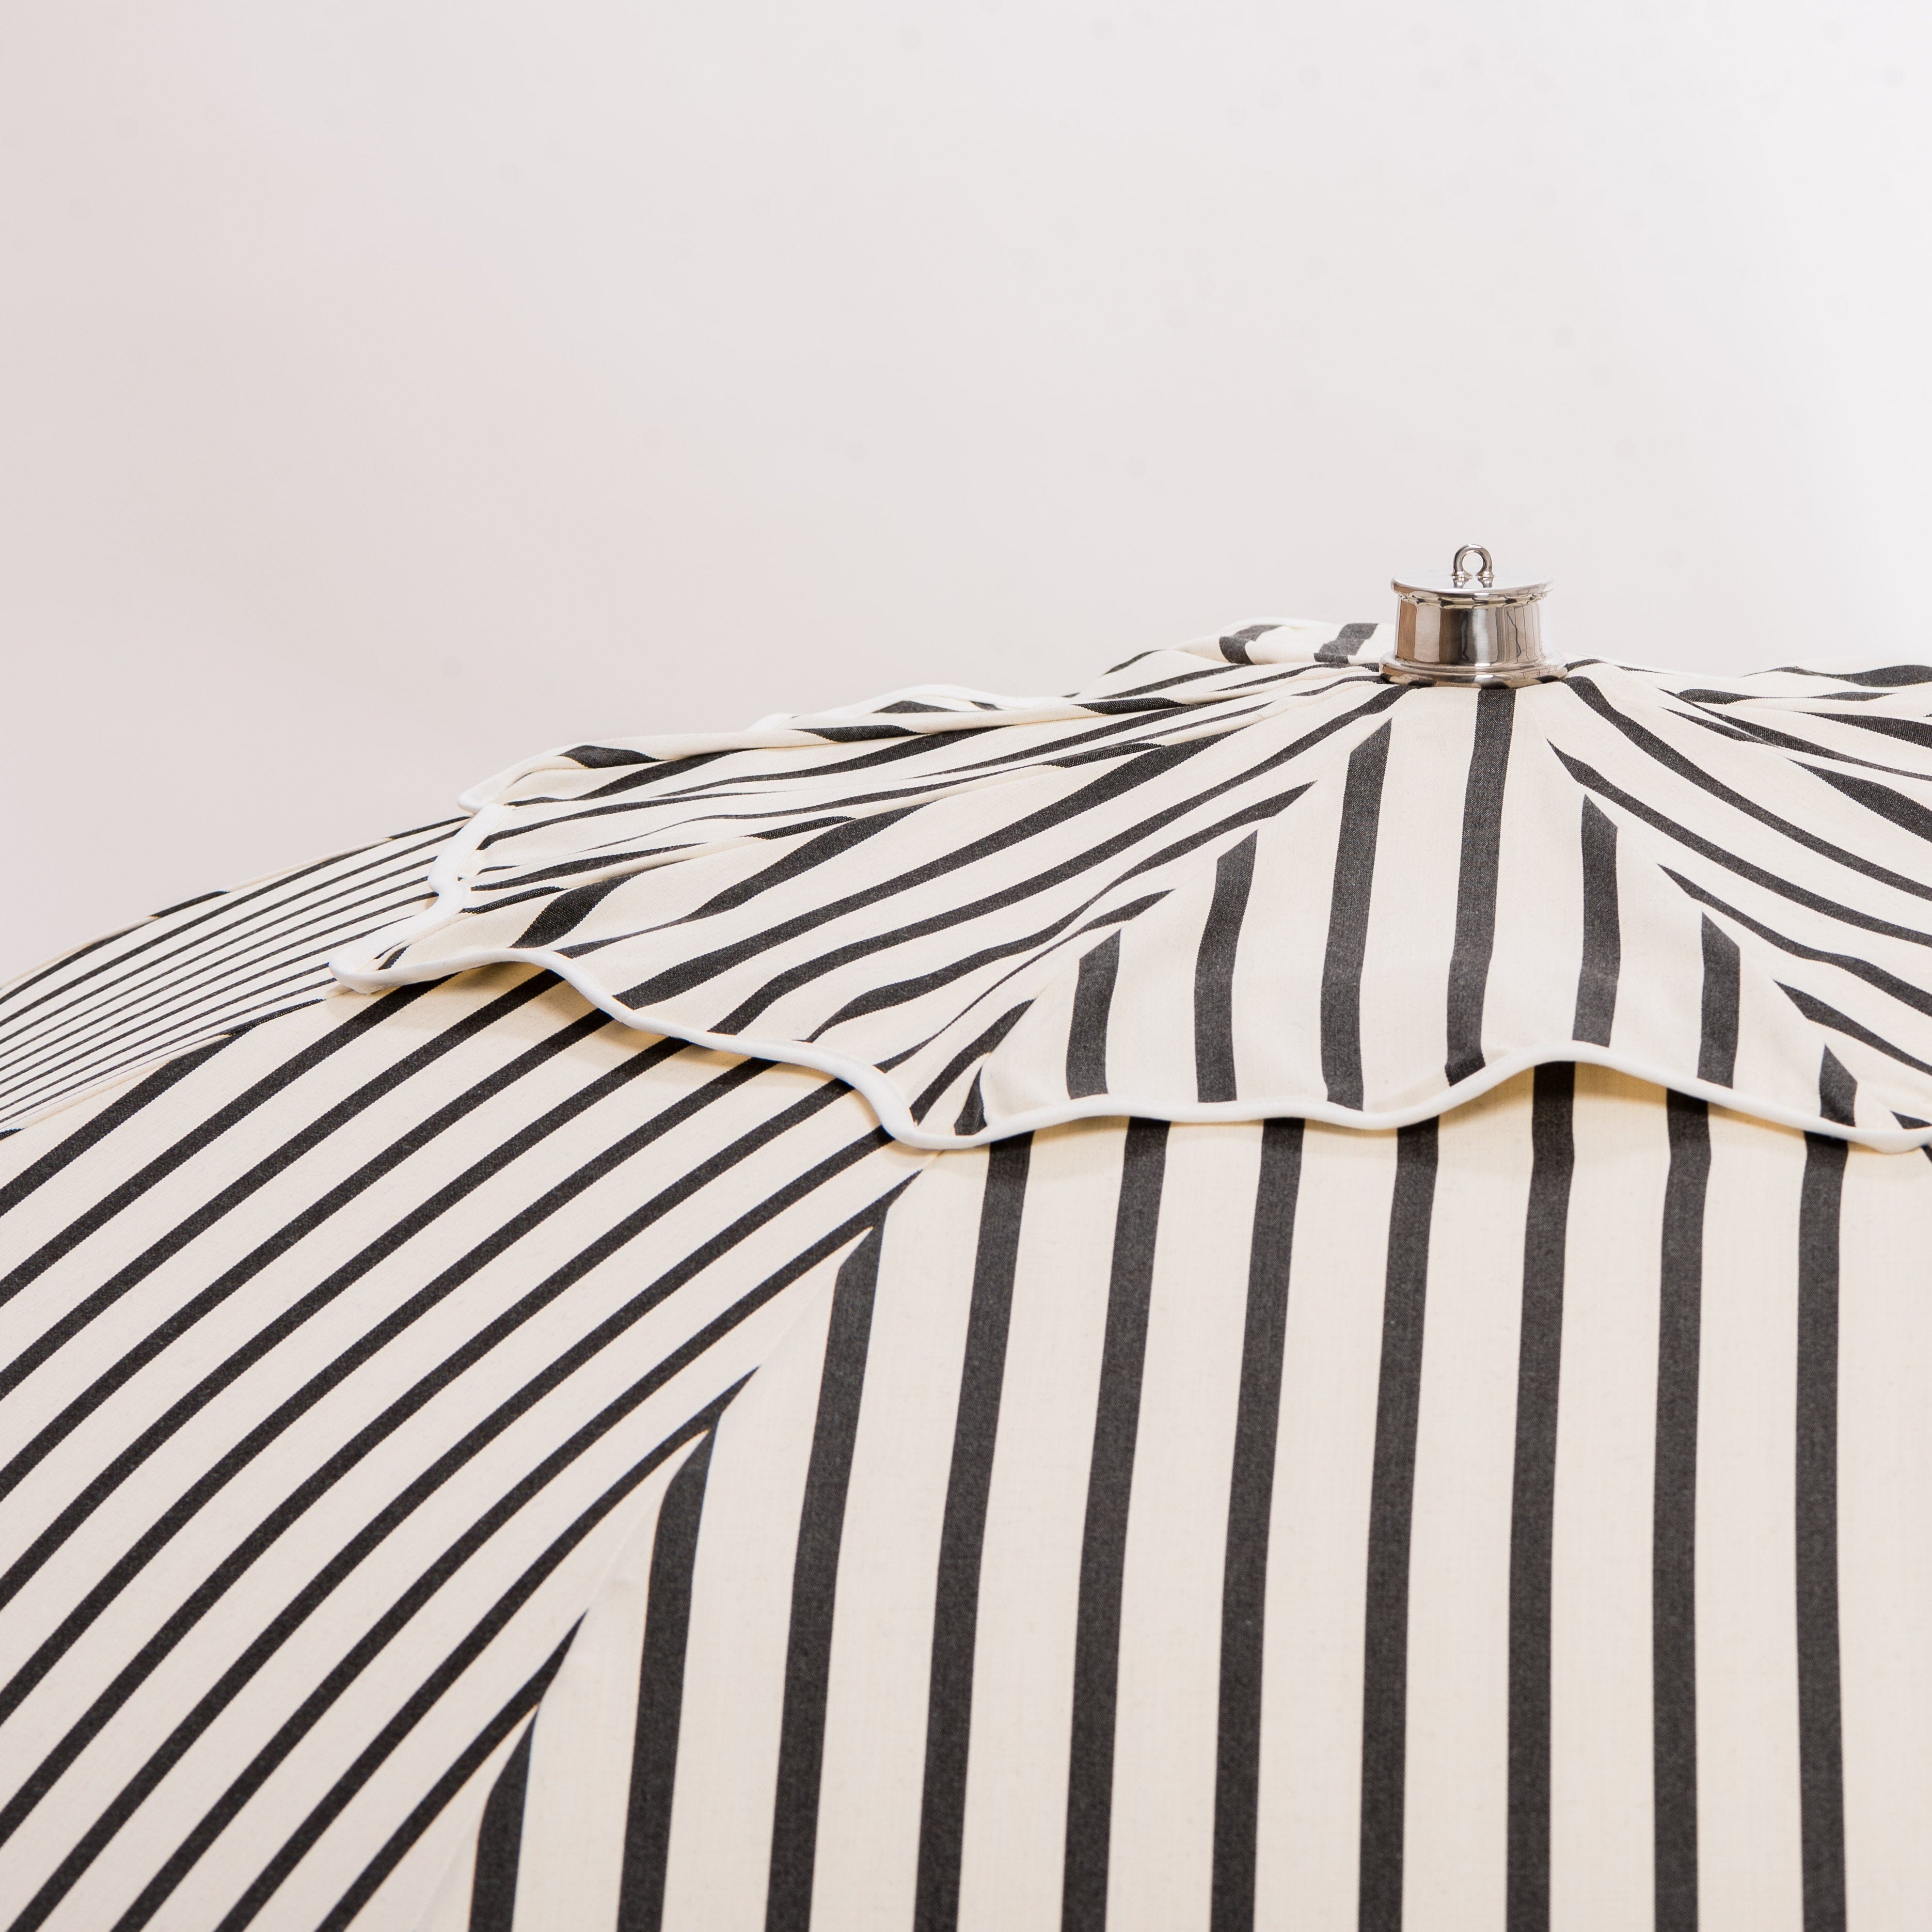 The Patio Umbrella - Monaco Black Stripe Patio Umbrella Business & Pleasure Co 